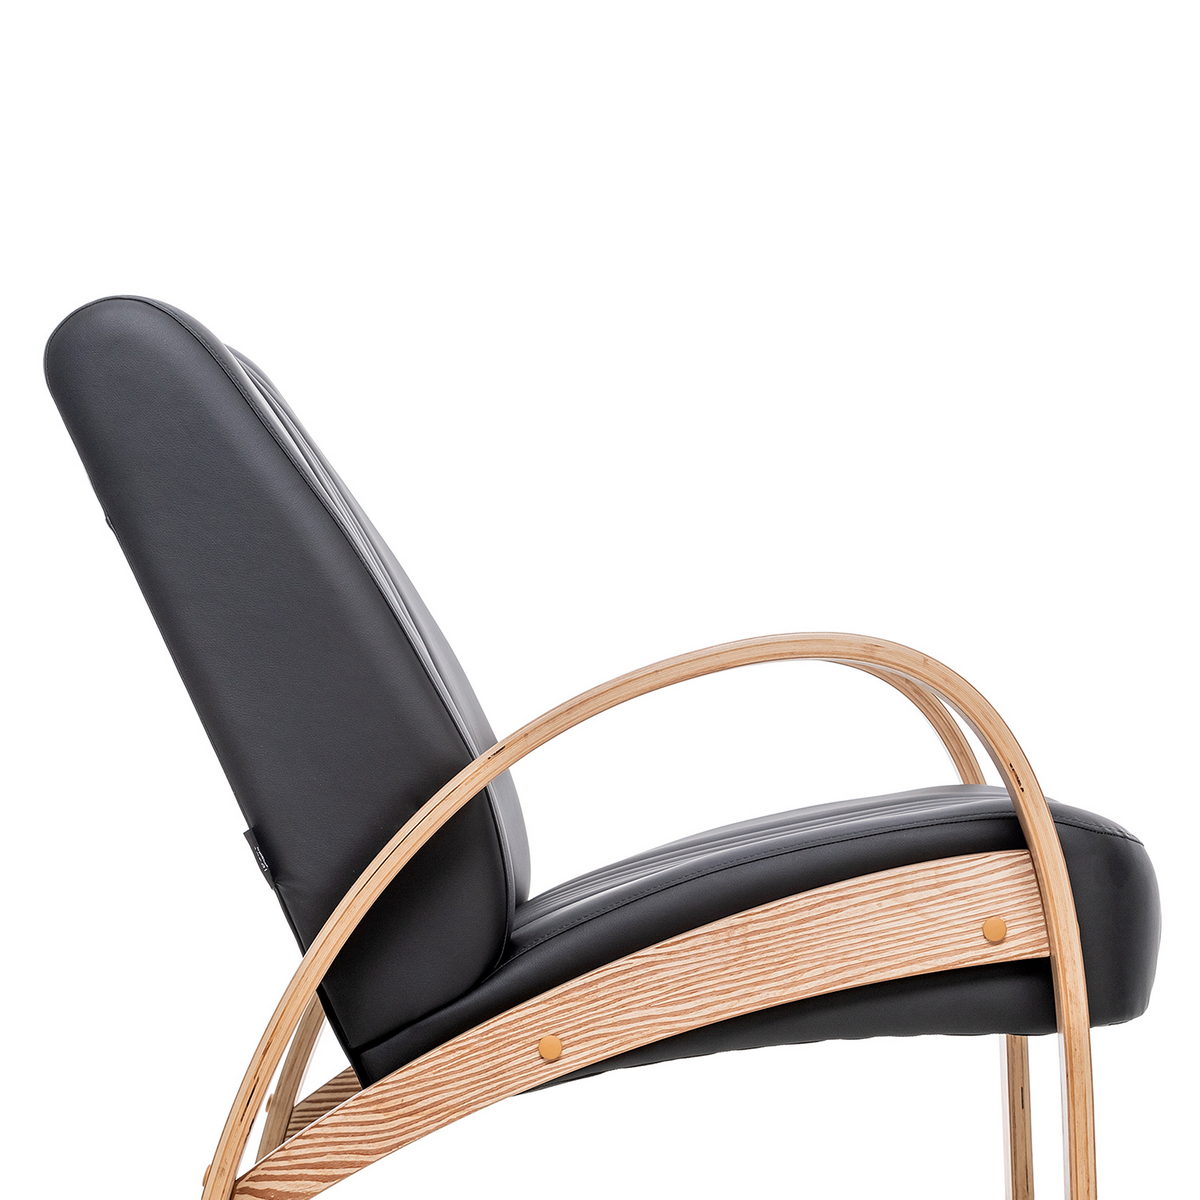 Кресло для отдыха Модель S7 Люкс (Импэкс). Цвет каркаса: Дуб шпон; Цвет обивки: Madryt 9100